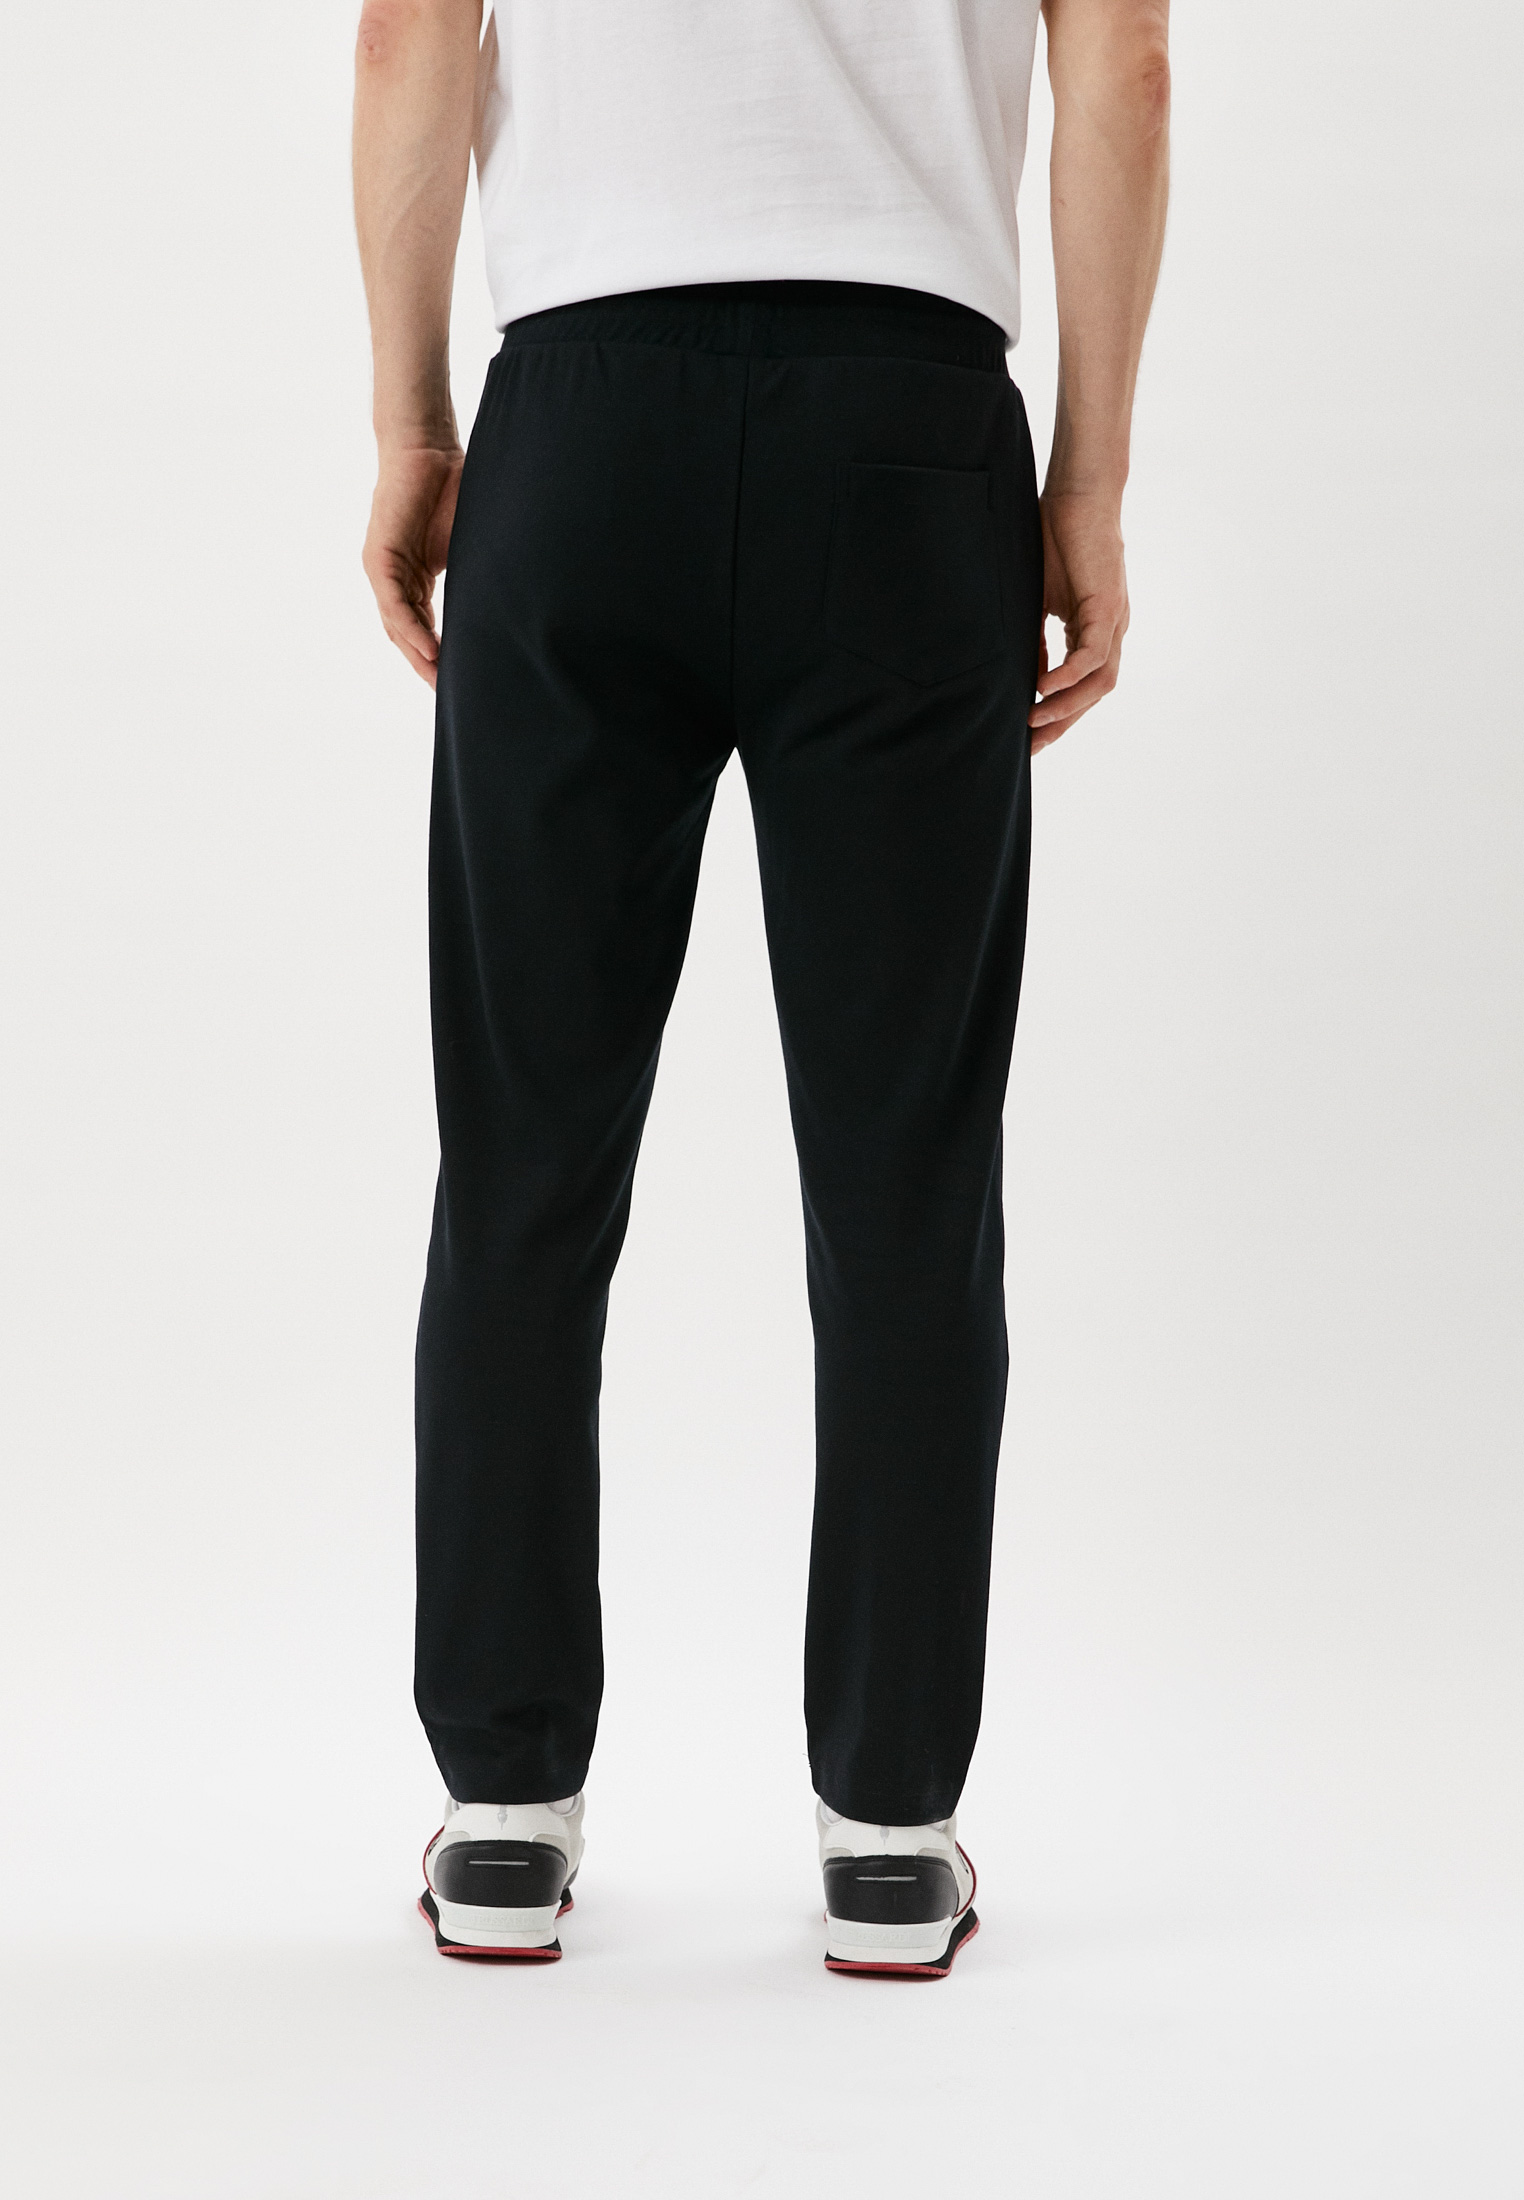 Мужские спортивные брюки Baldinini (Балдинини) M205L: изображение 3